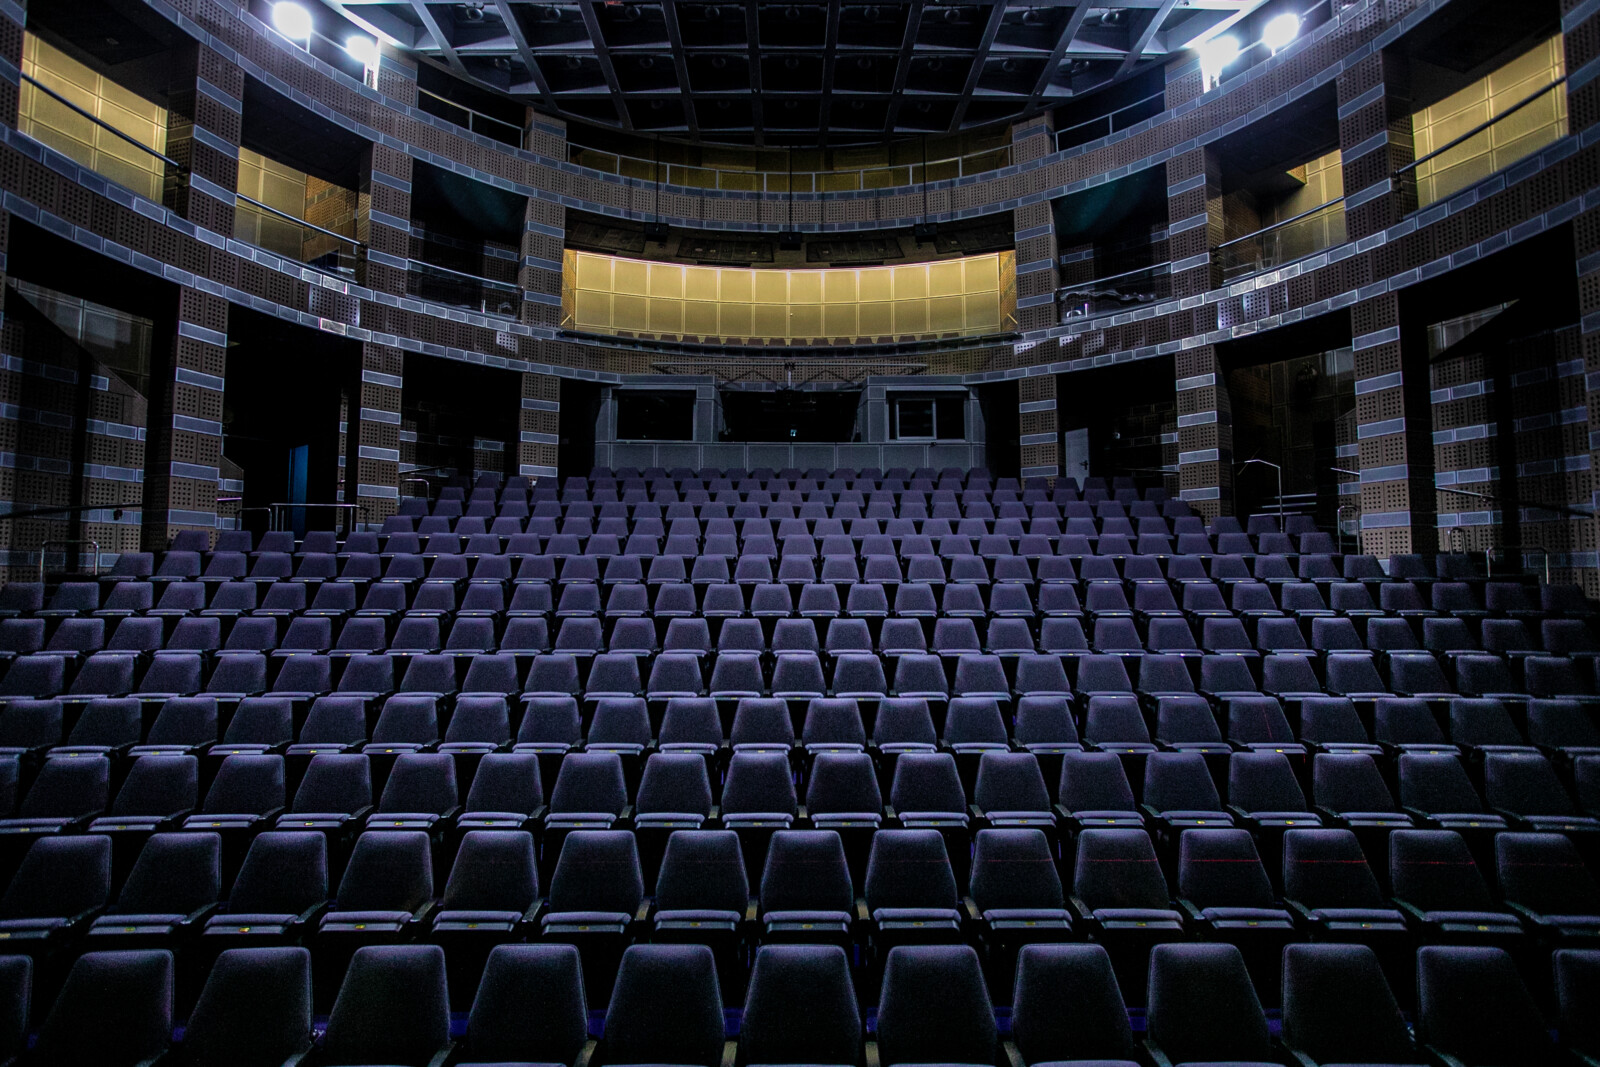 אולם הקולנוע במשכן לאמנויות הבמה בבאר שבע (צילום: סלי פטל)